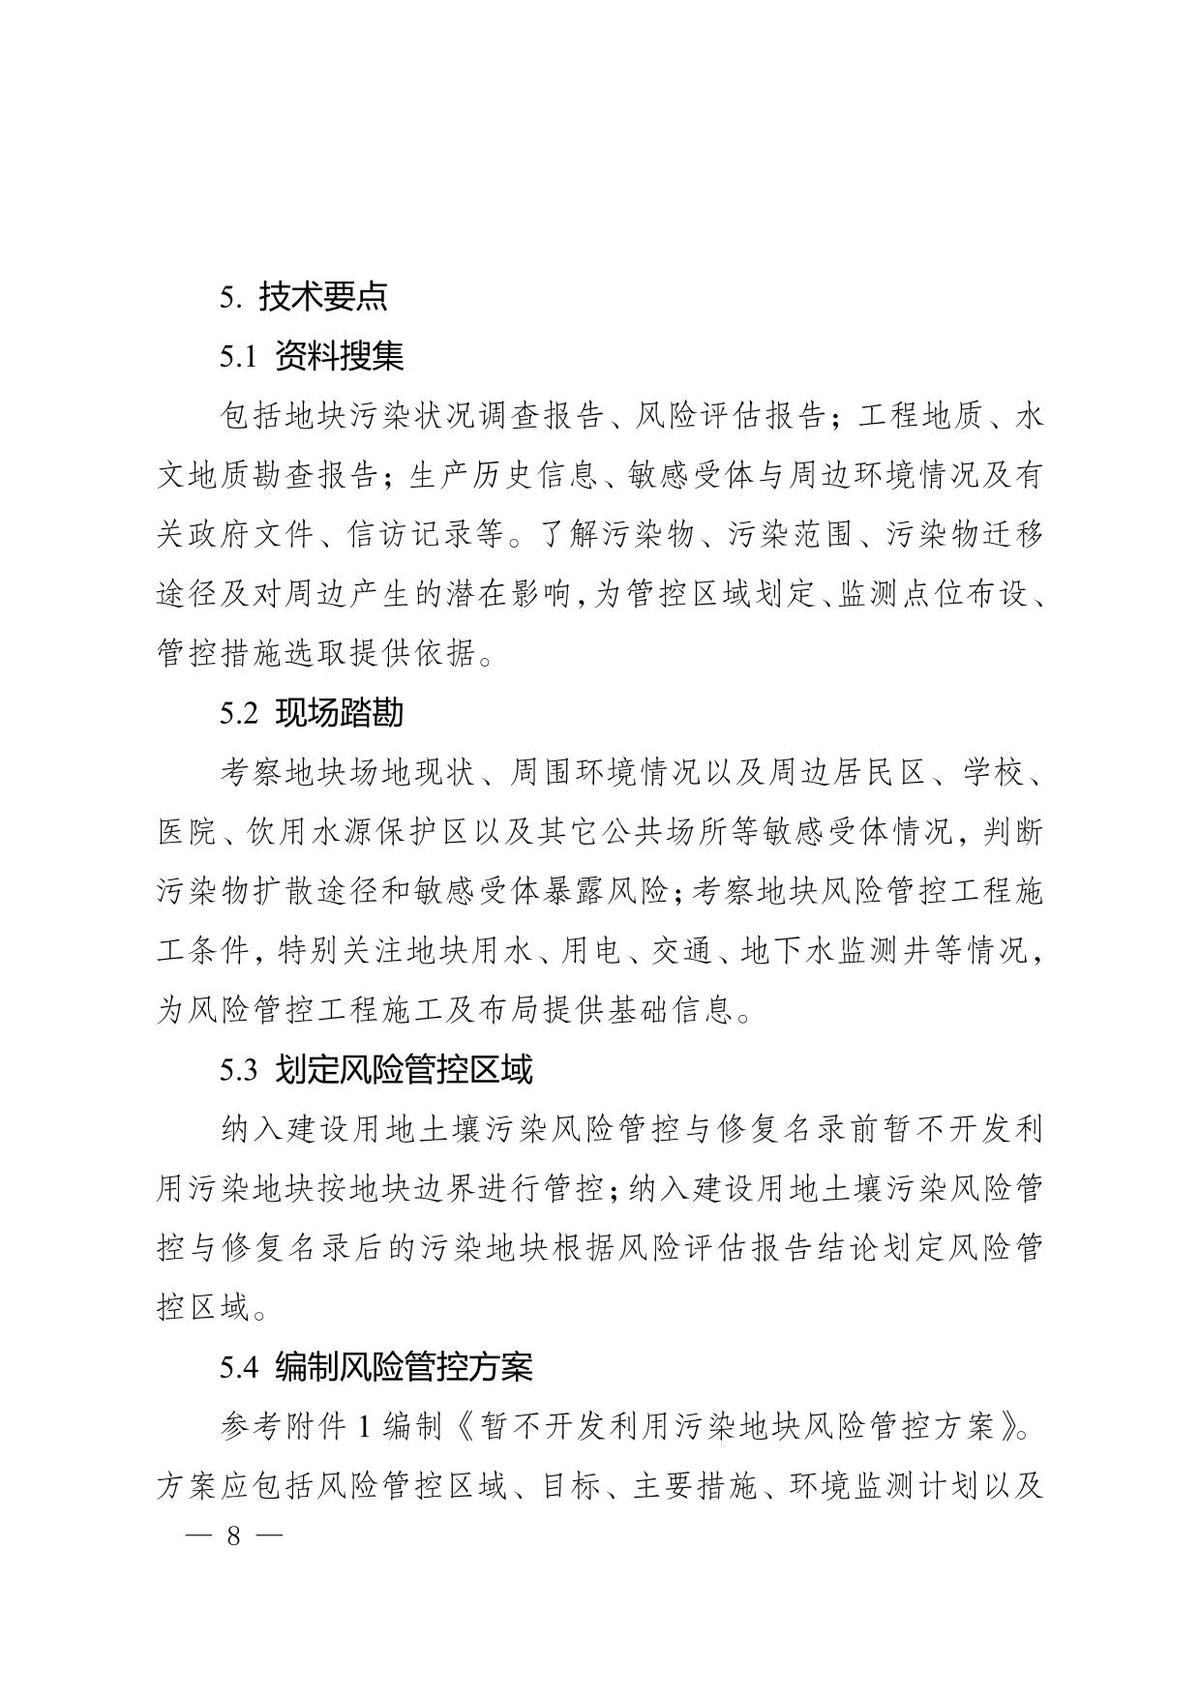 河南省暂不开发利用污染地块风险管控技术指南(试行）